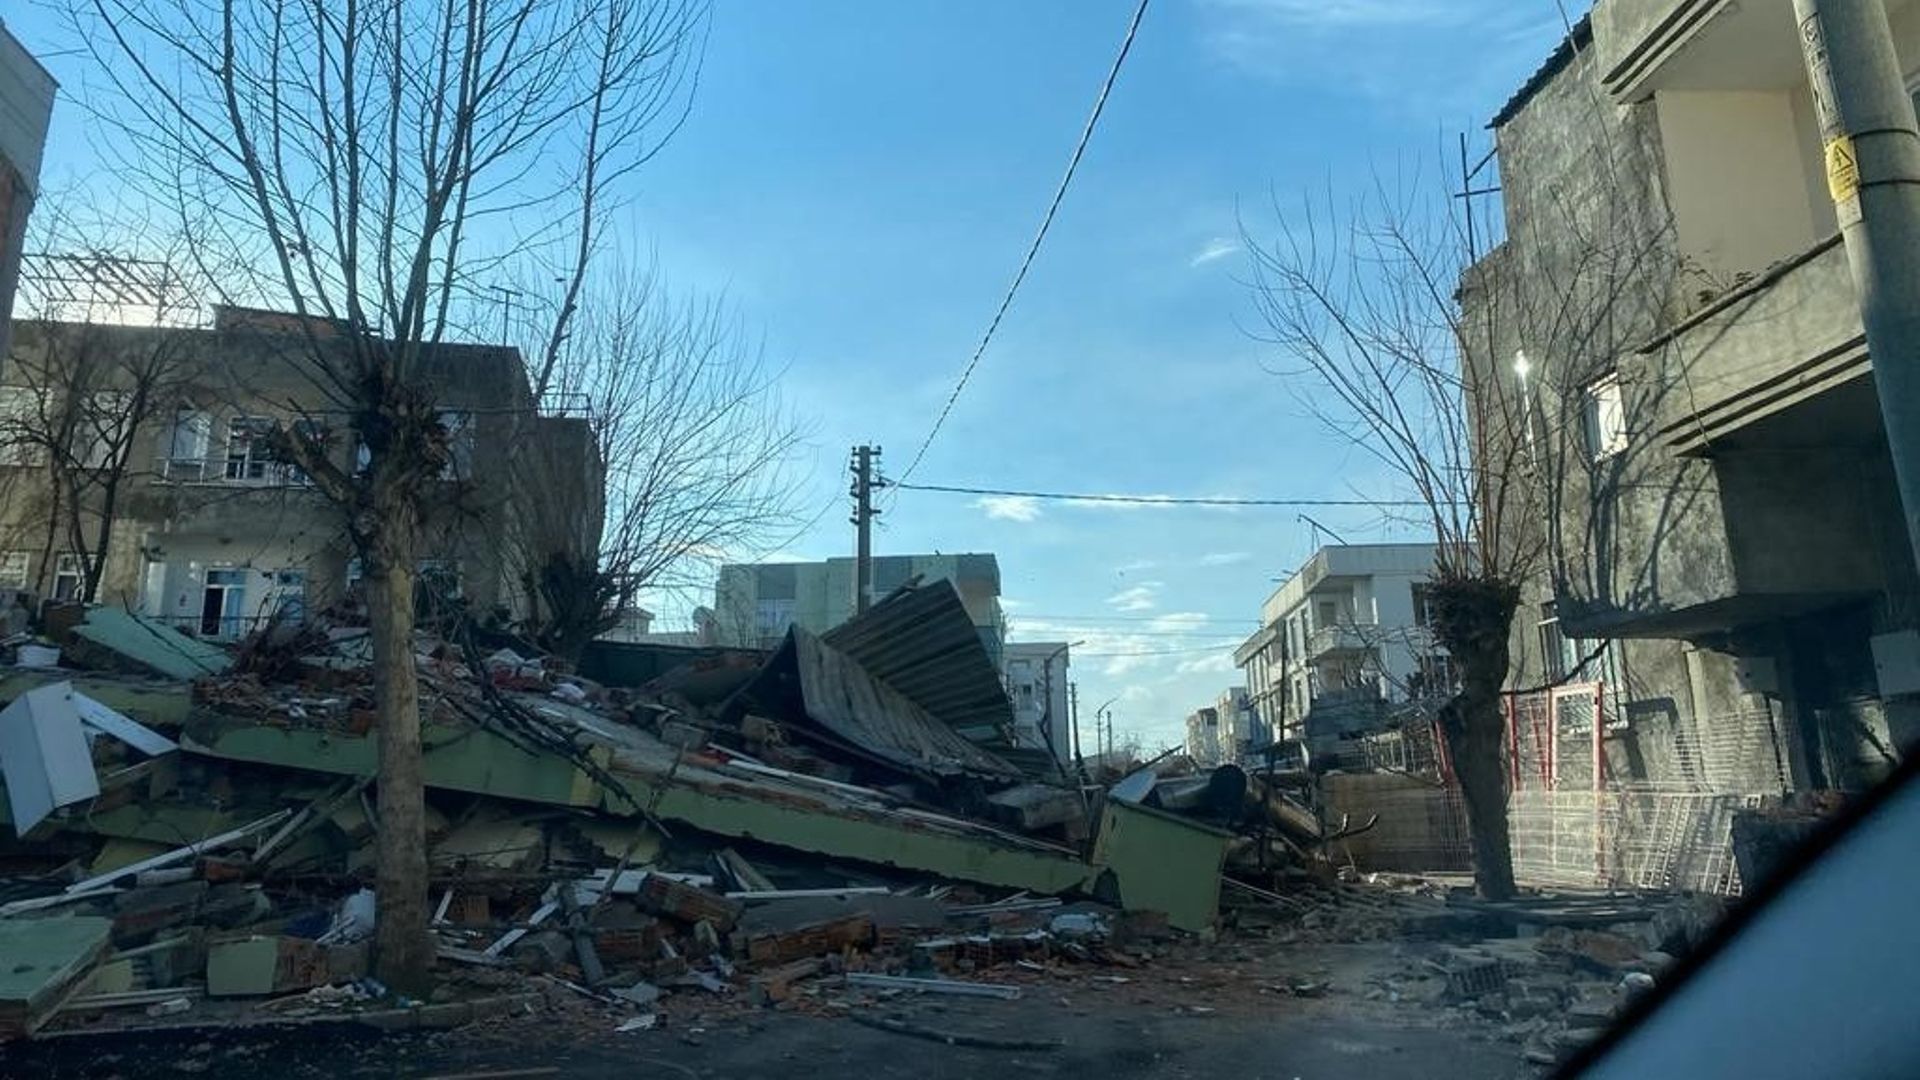 Adiyaman, ville turque frappée par le séisme